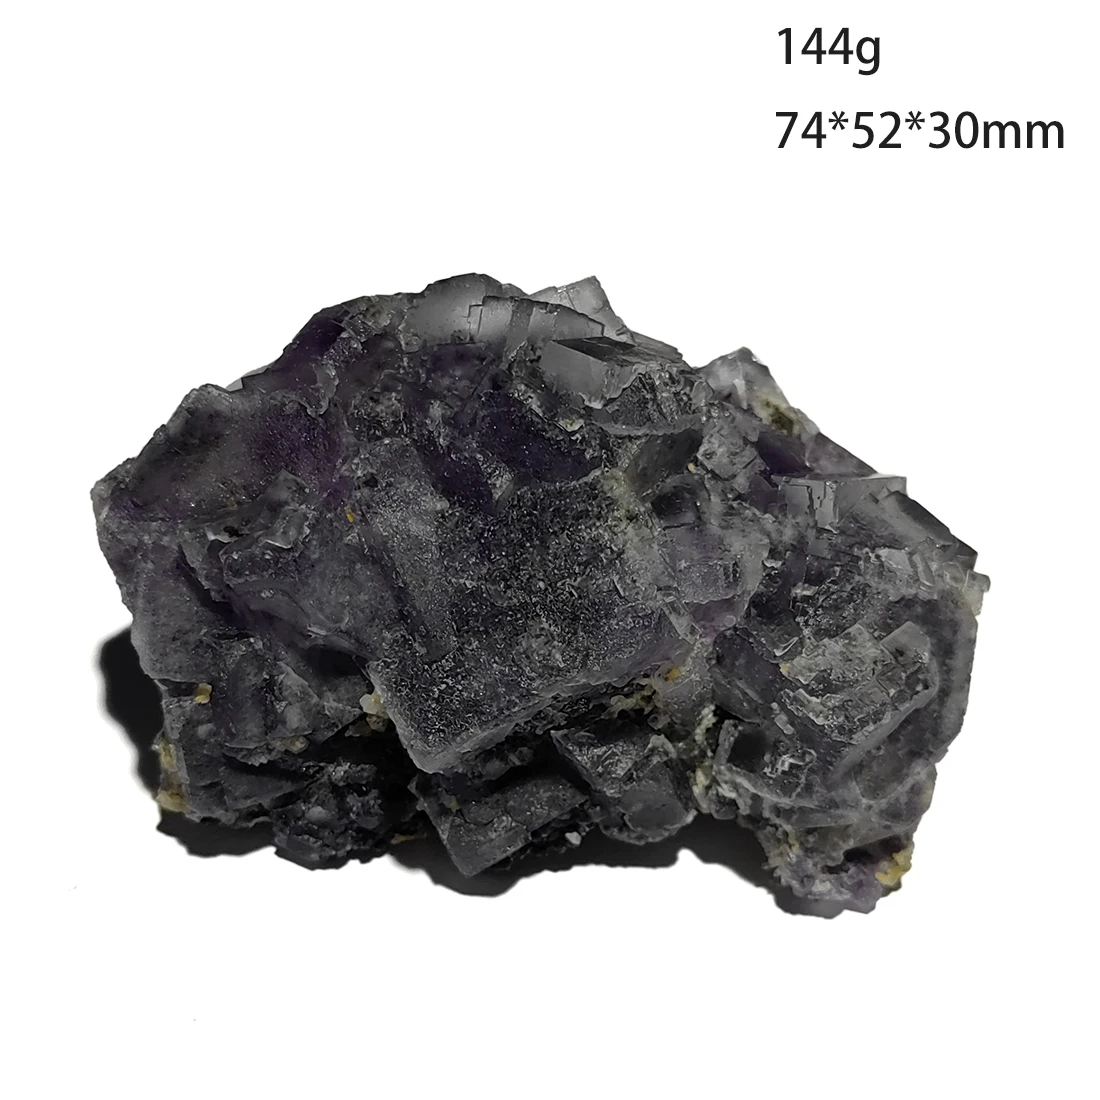 

C3-7B 100% натуральный фиолетовый флюорит, минеральный кристалл, коллекция образцов из провинции яогансиань Хунань, Китай